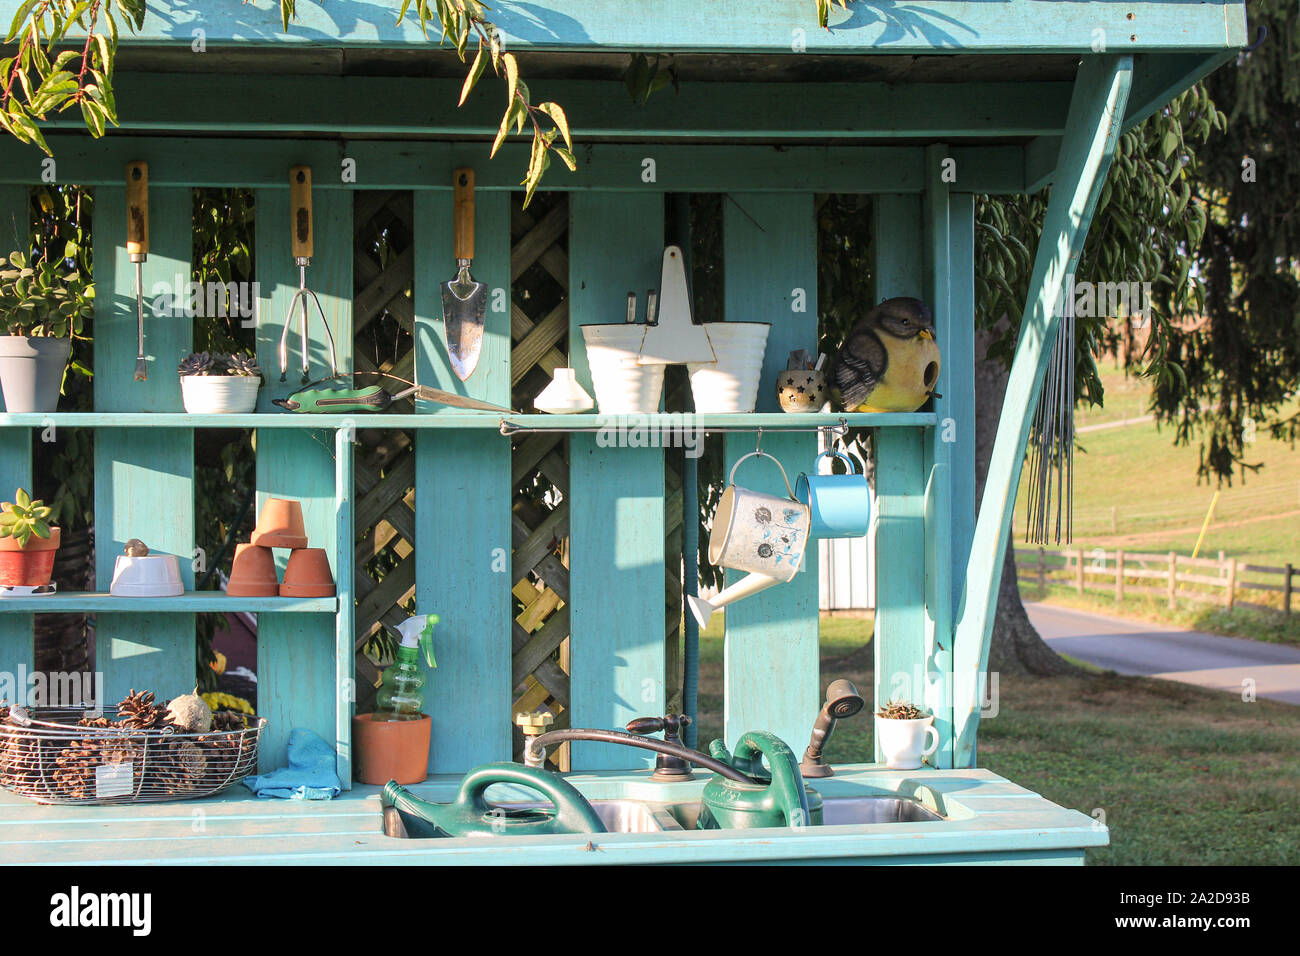 Teal Blue Garden Outil Travail banc avec Pots de fleurs Banque D'Images